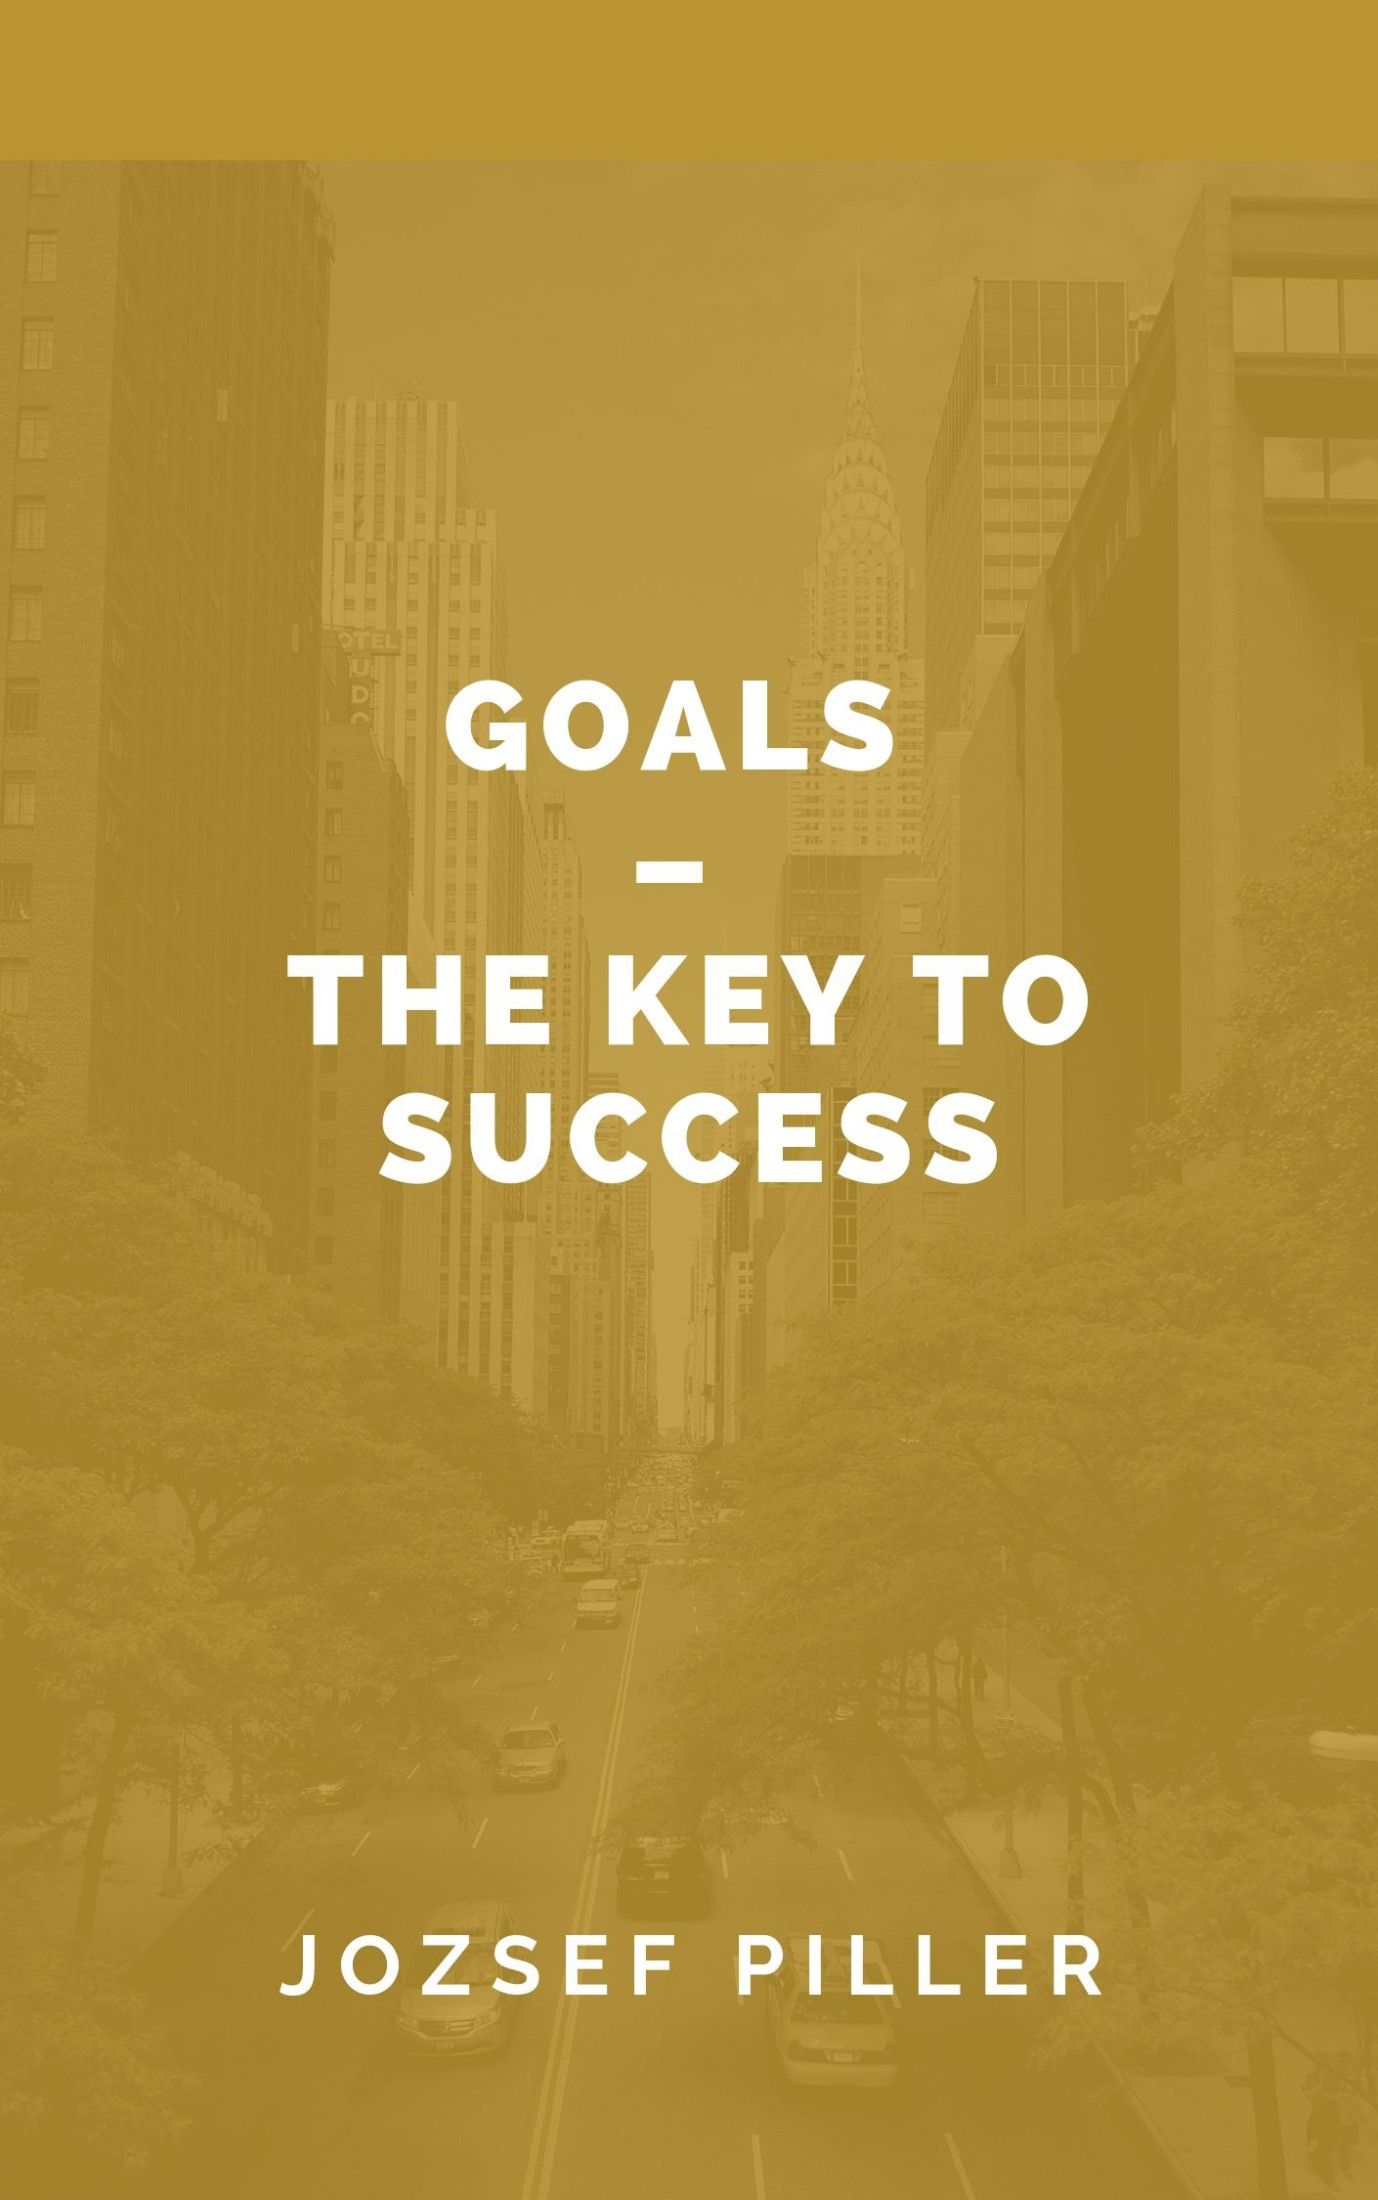 Goals – The Key to Success, e-bog af Jozsef Piller